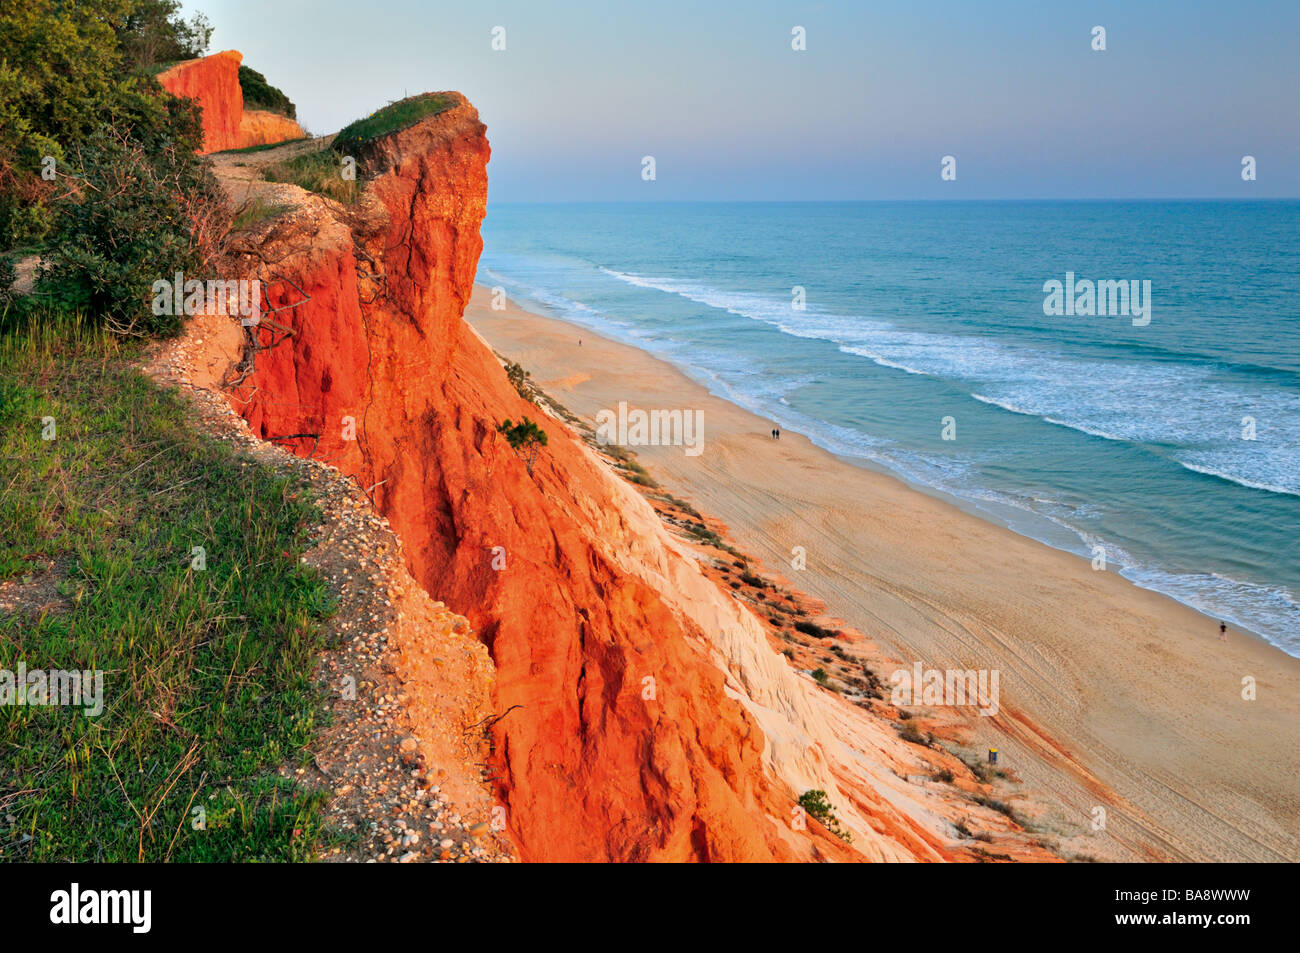 Le Portugal, l'Algarve : Vue de plage de Praia da Falesia Banque D'Images